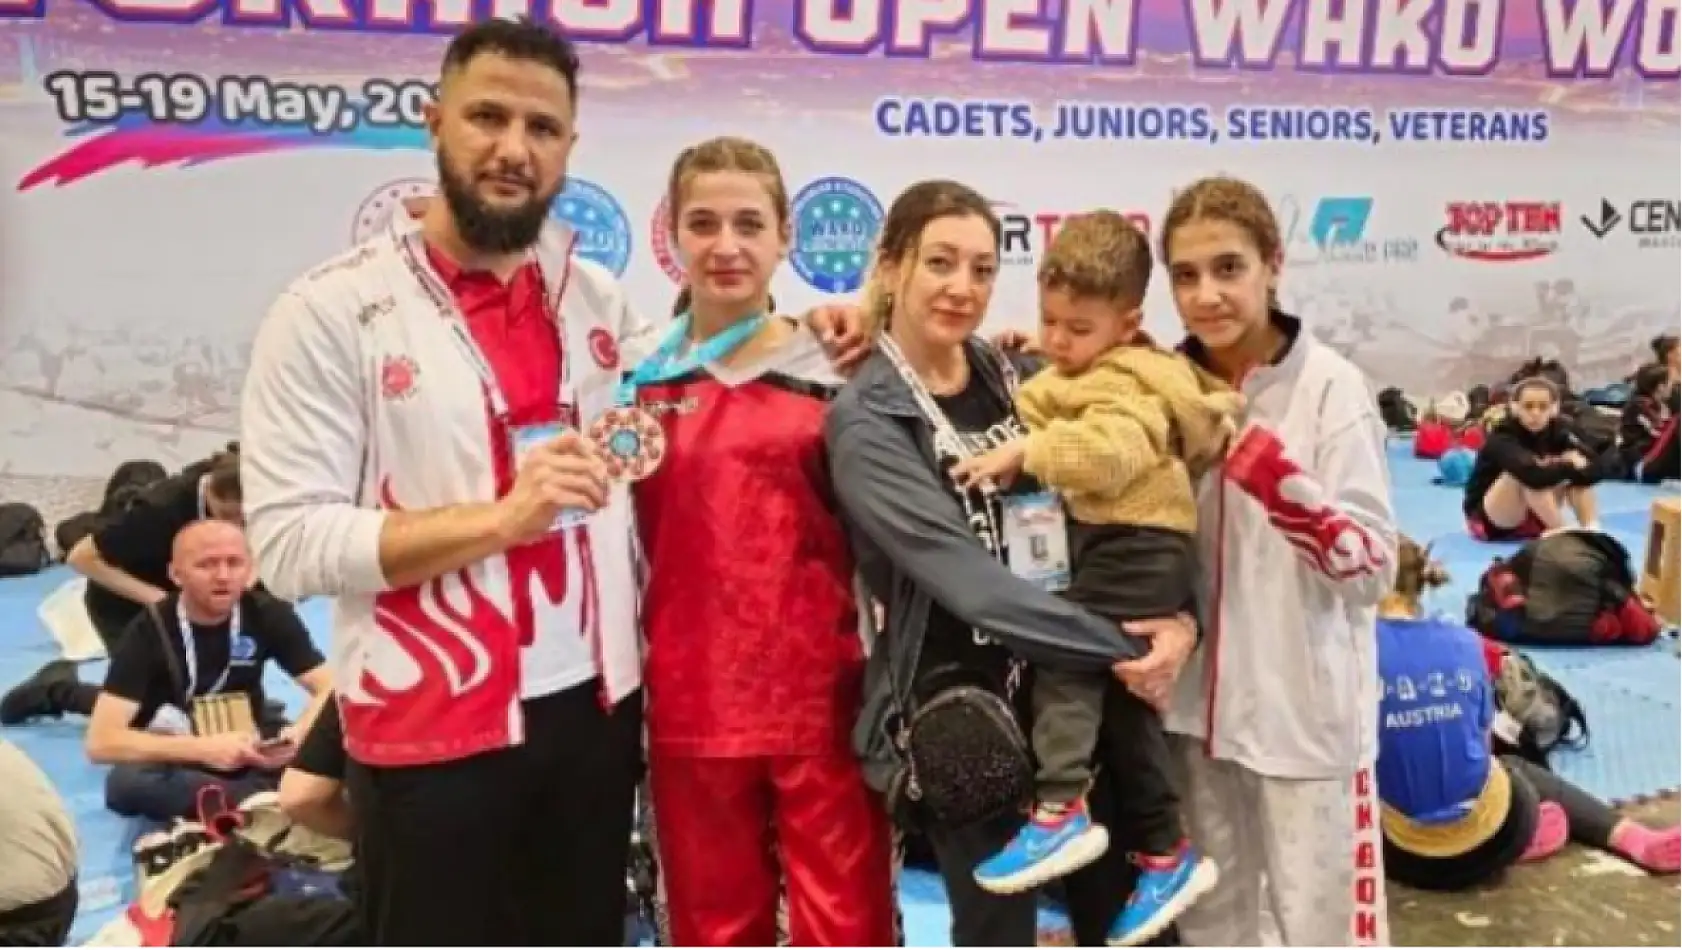 Marmarisli genç sporcu Türkiye'nin gururu oldu